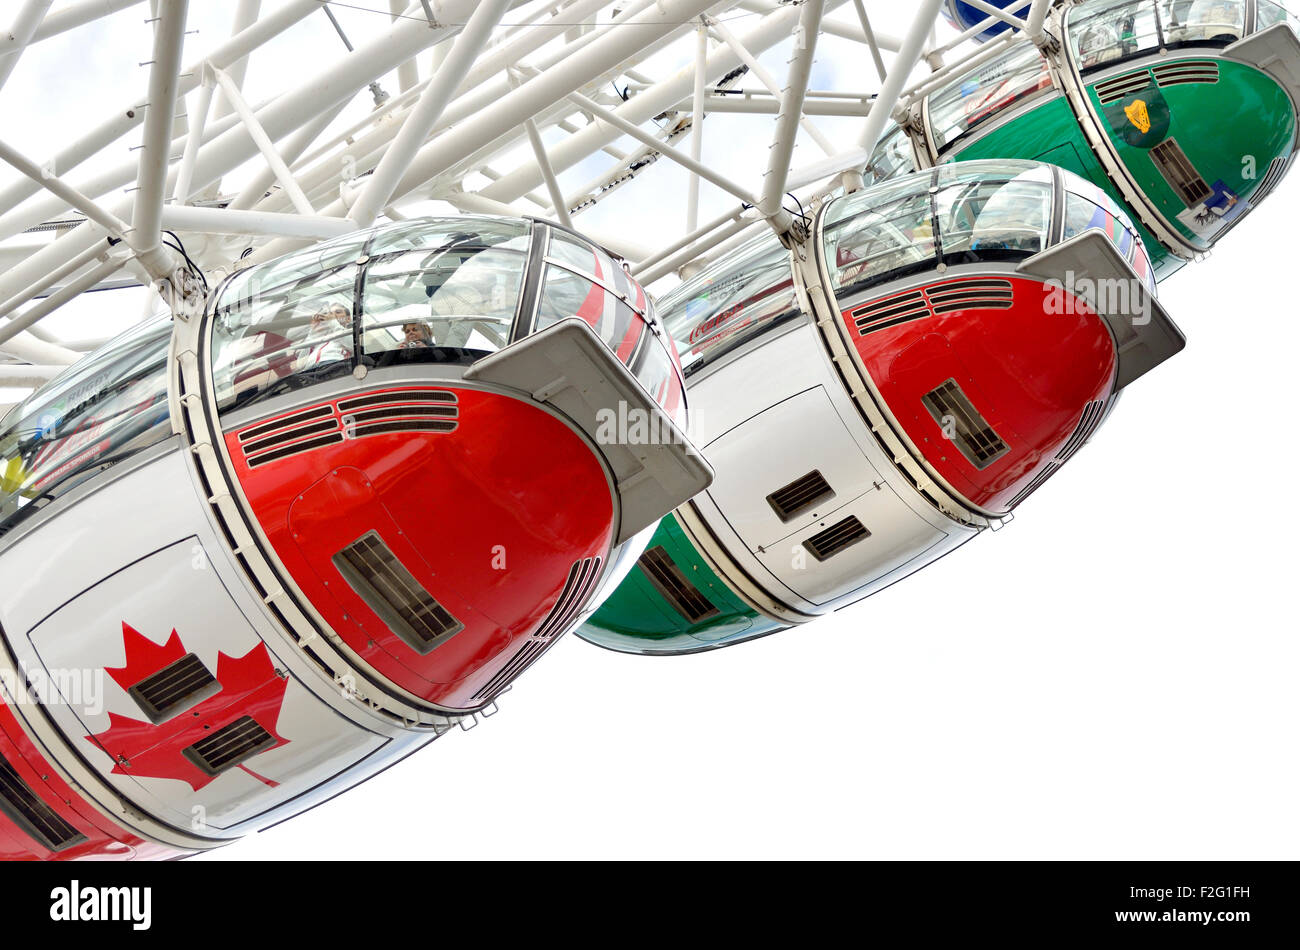 Londres, septiembre de 2015. El London Eye o Millennium Wheel con vainas pintados con los colores de las 20 naciones que participan en la Copa del Mundo de Rugby Foto de stock